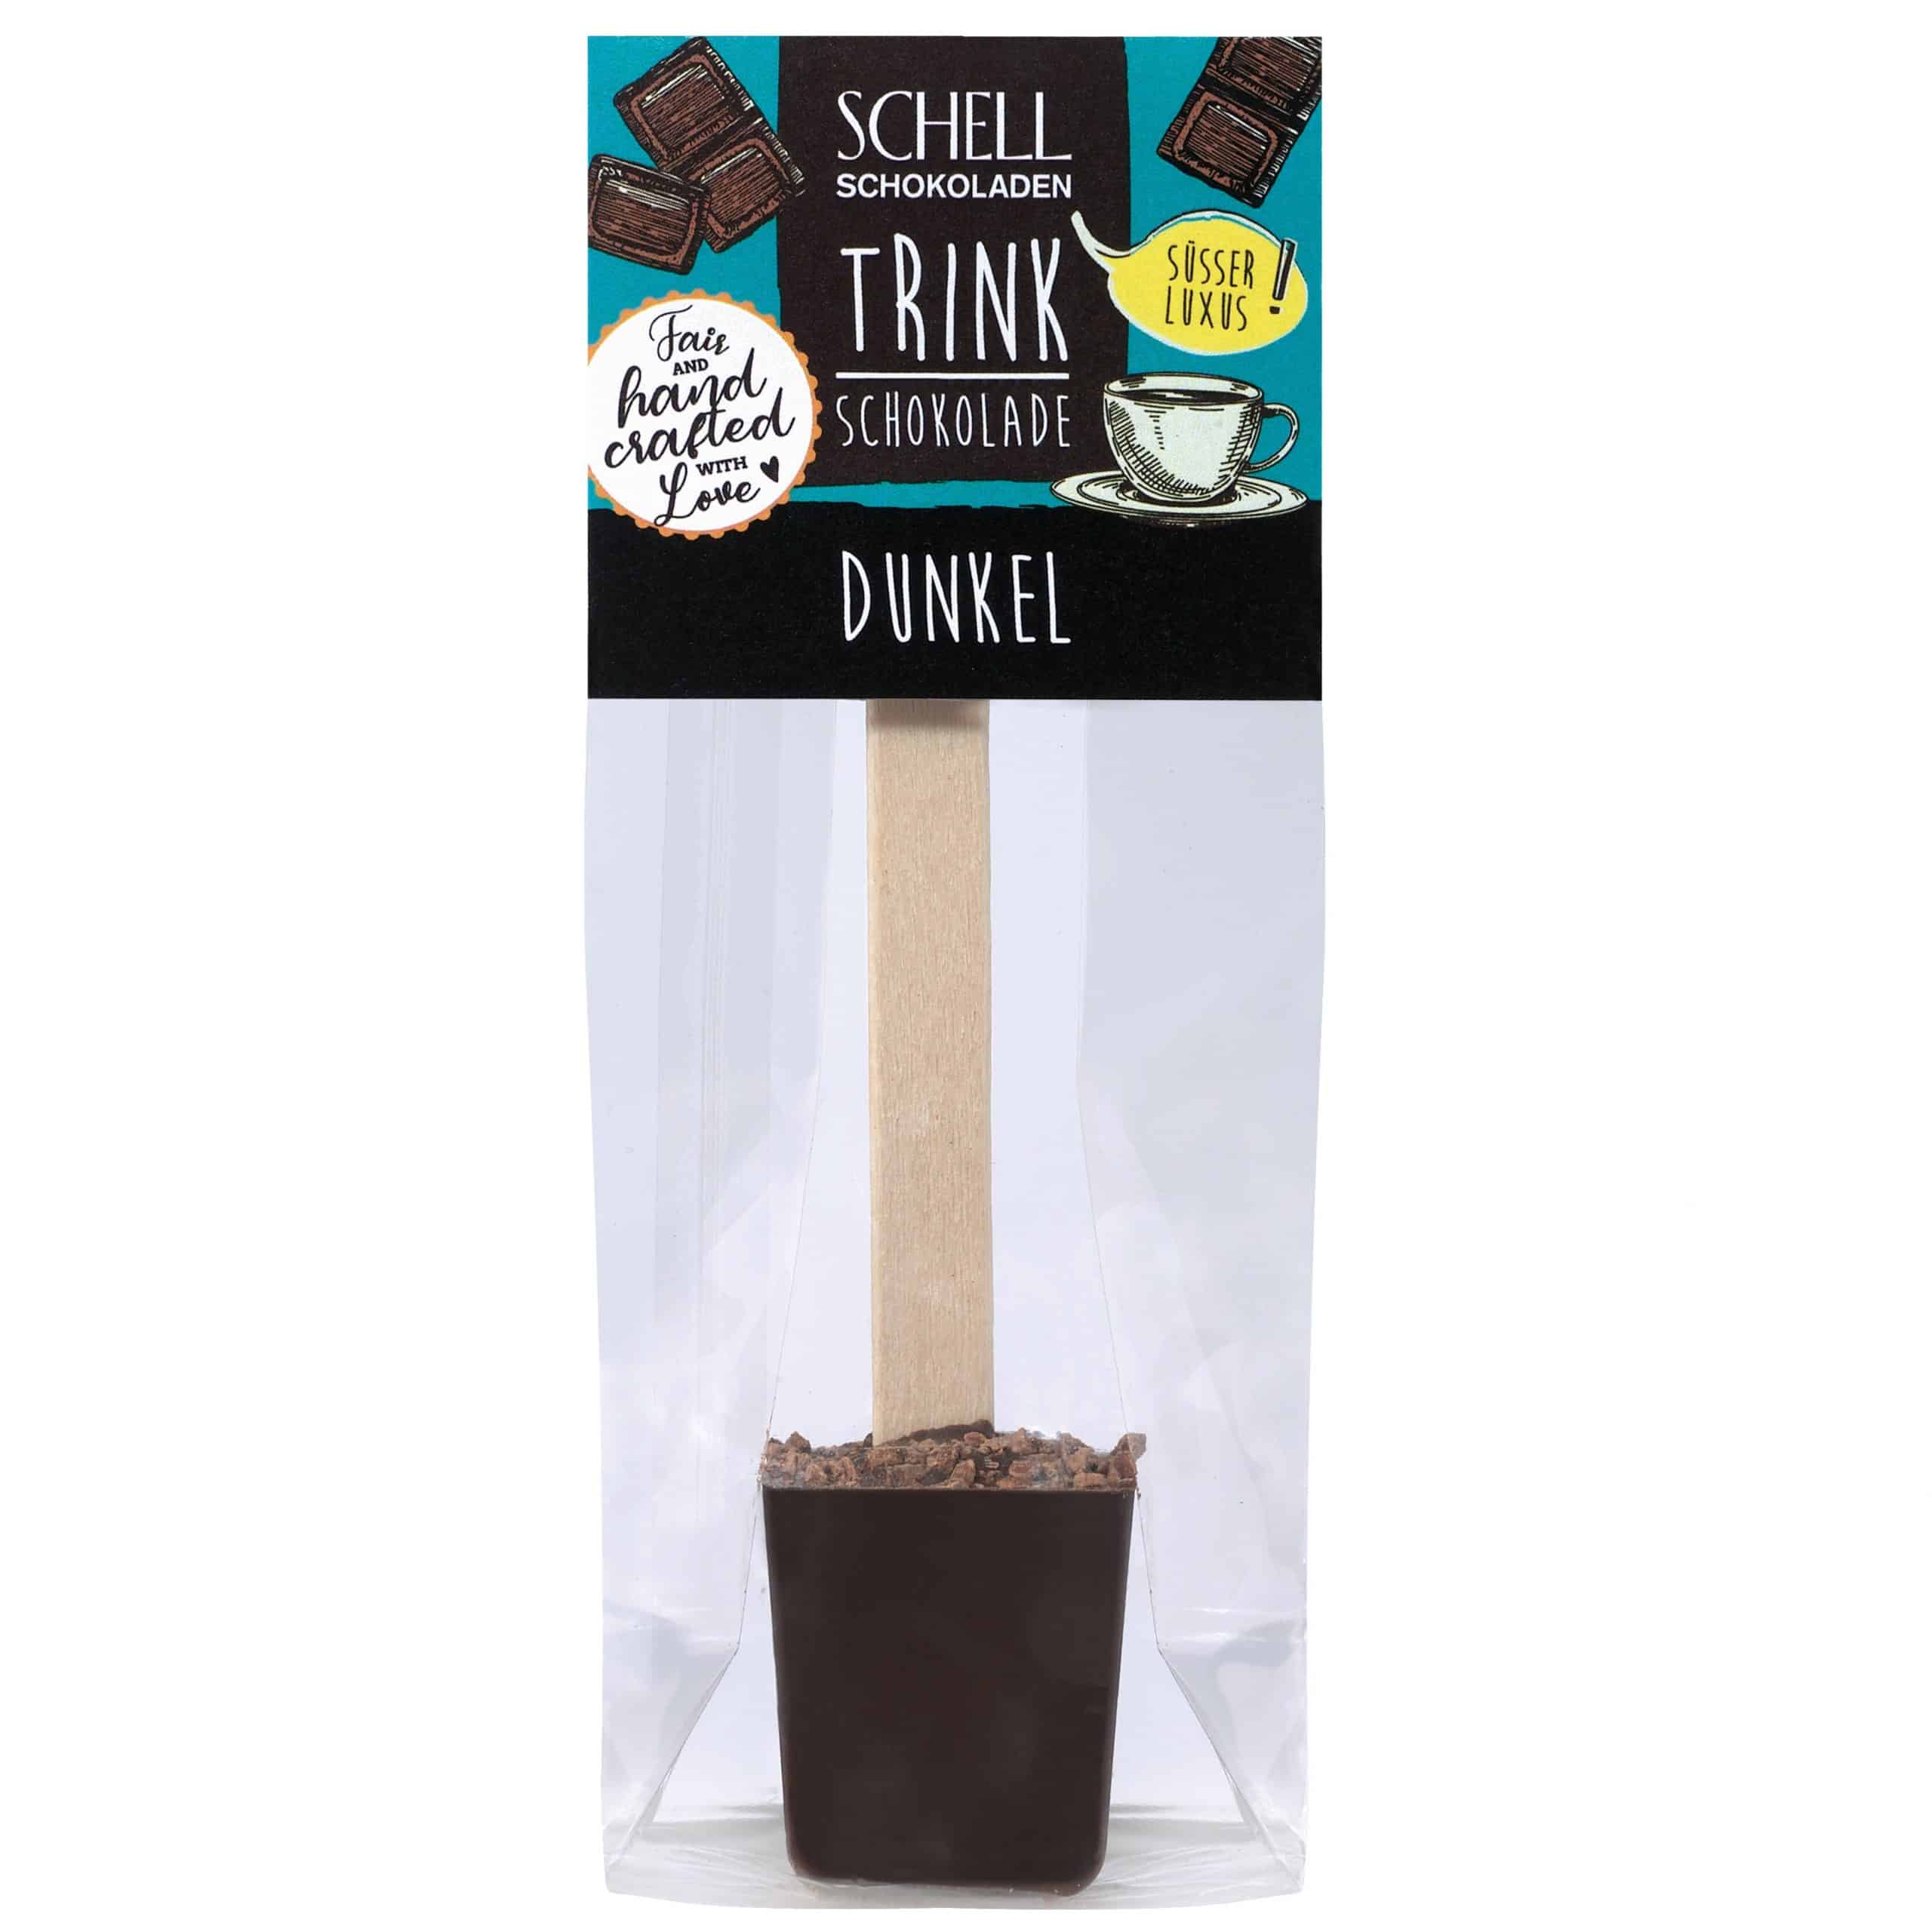 Der Trinkschokoladen Stick Dunkel wird mit edelherber Schokolade (70 %) hergestellt von Schell Schokoladen.